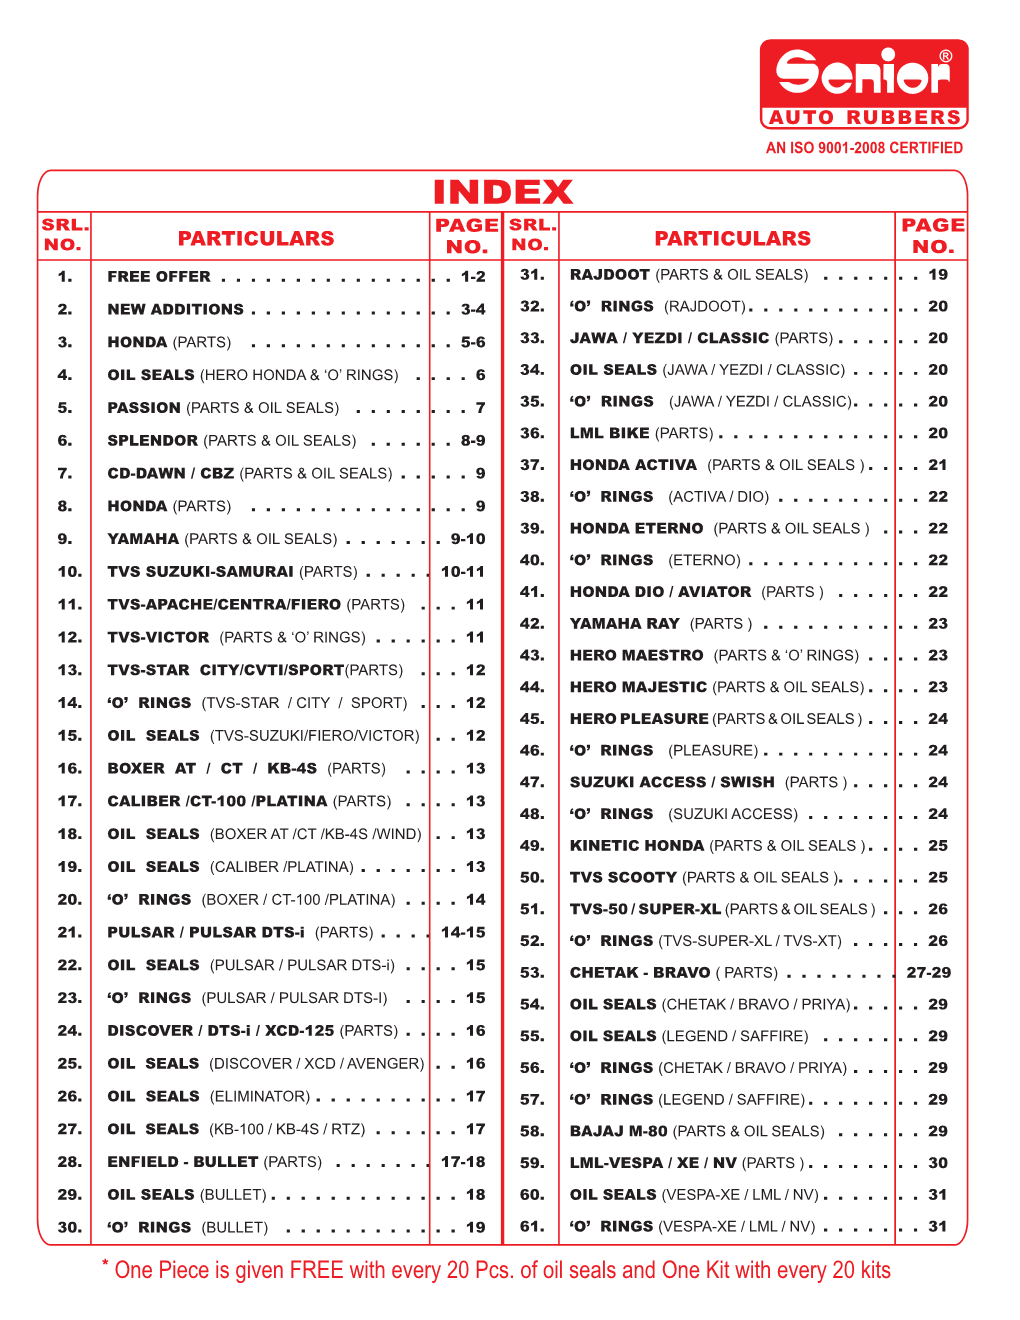 Senior List 2 & 3 Wh. February 2014